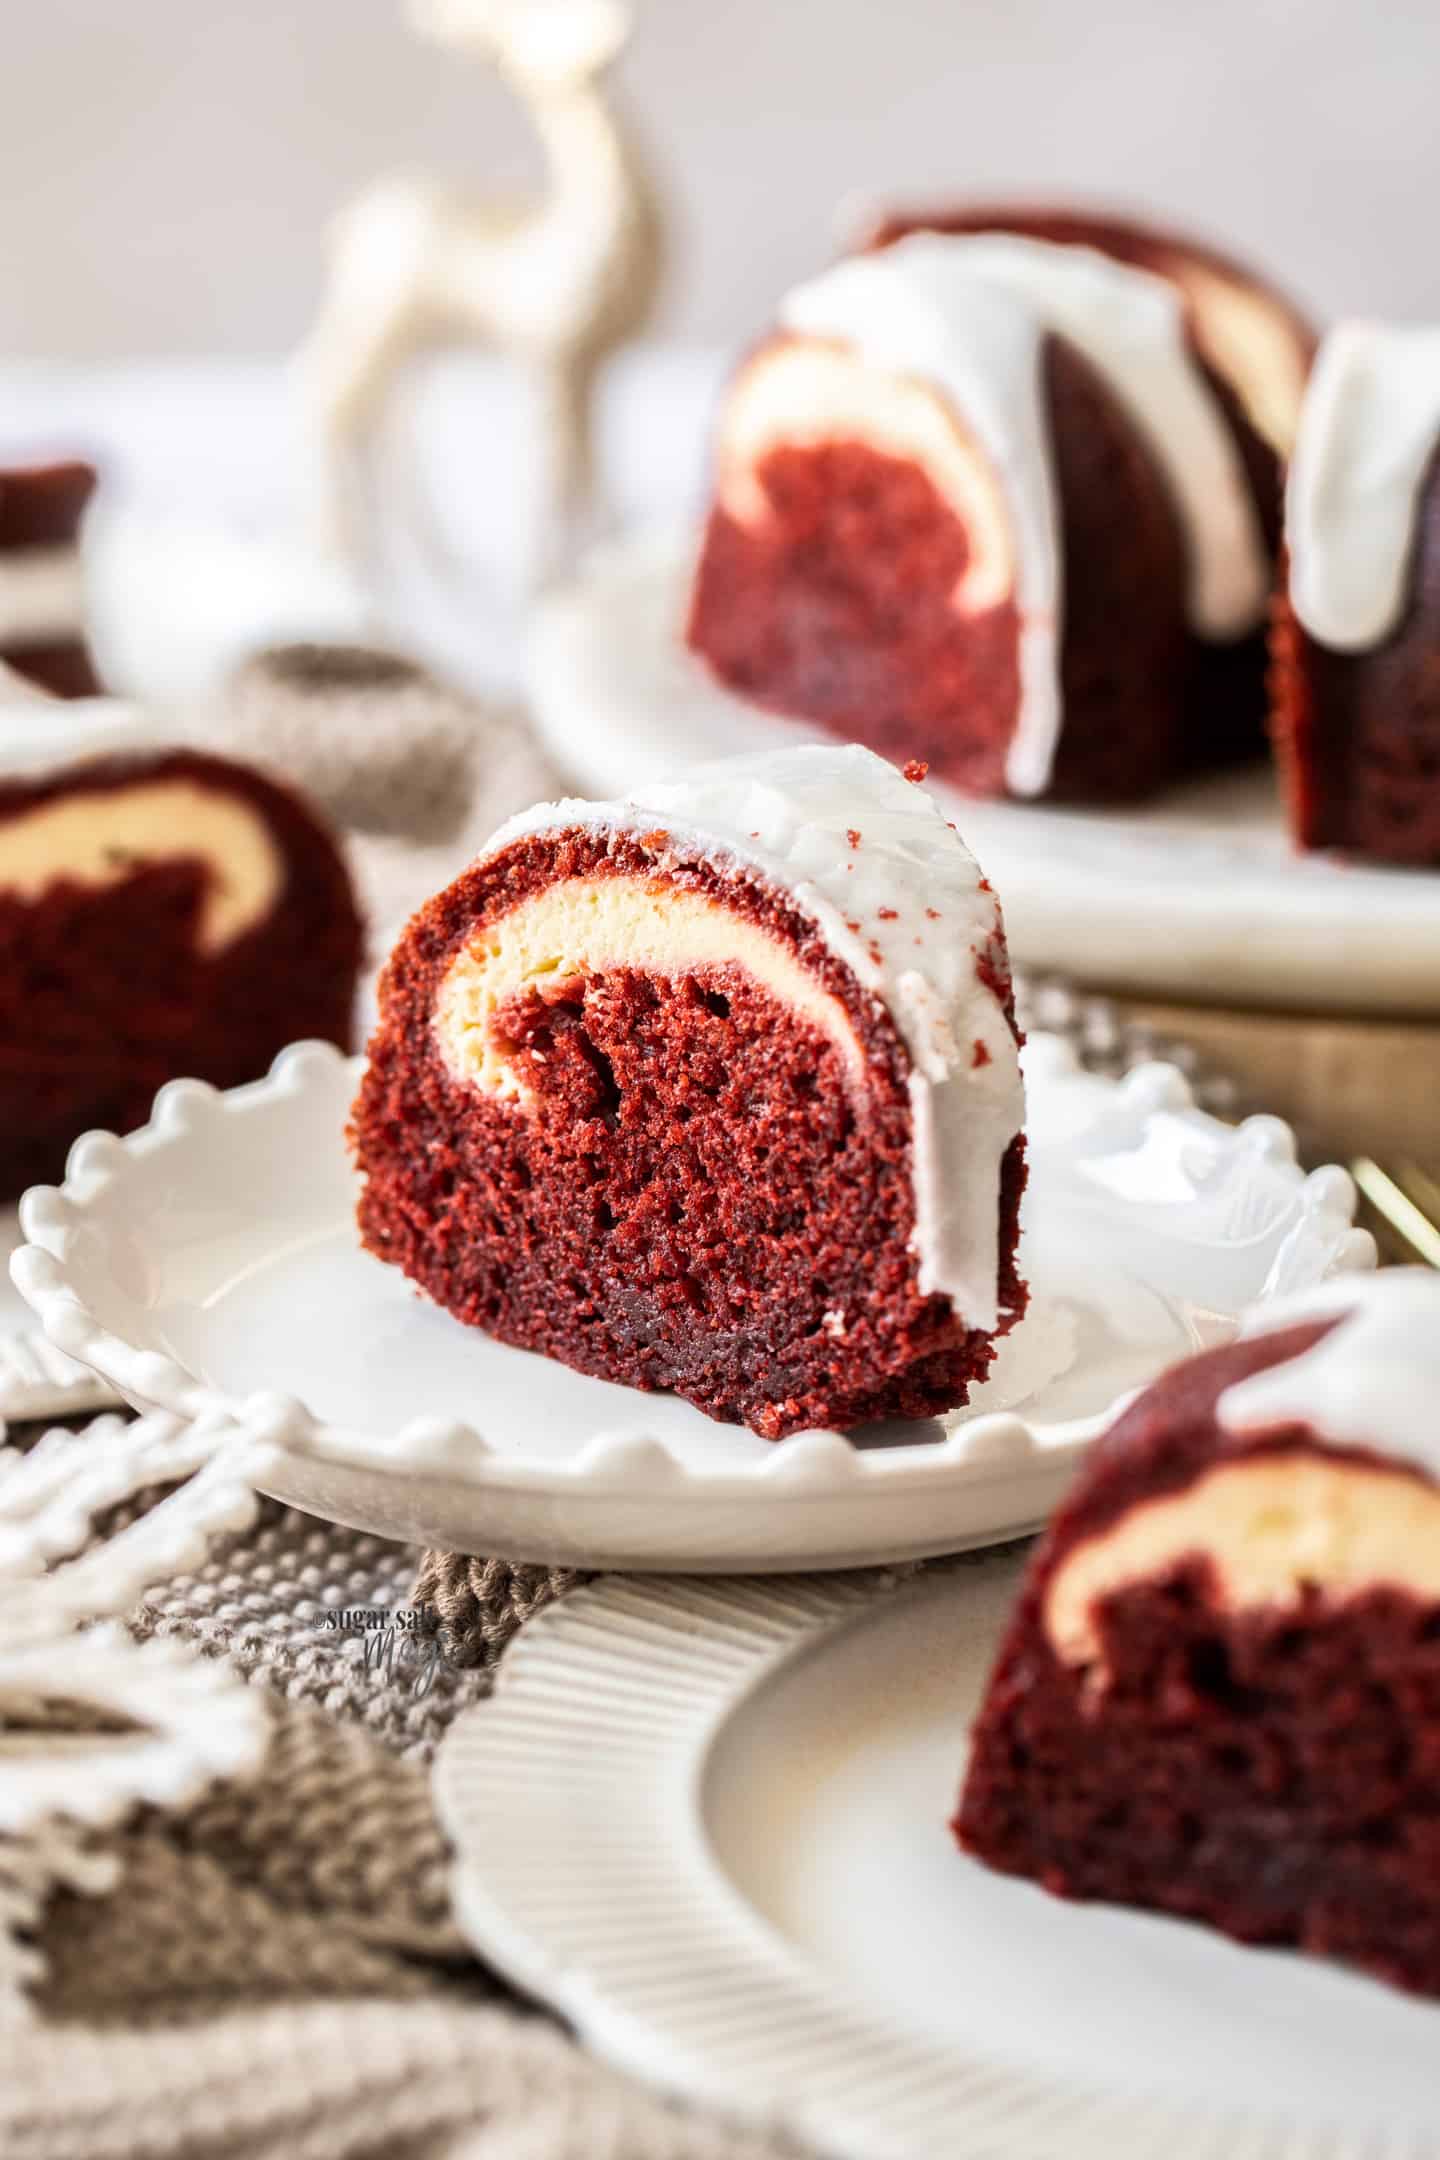 A slice of red velvet bundt cake on a white plate.